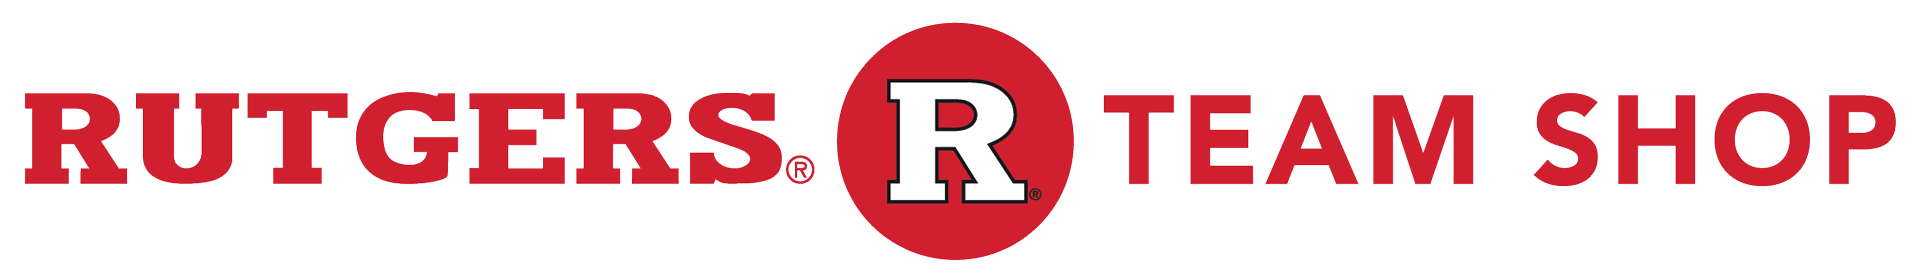 Rutgers Apparel, Rutgers University Gear, Rutgers Merchandise, Rutgers Clothing | Official Rutgers Team Shop